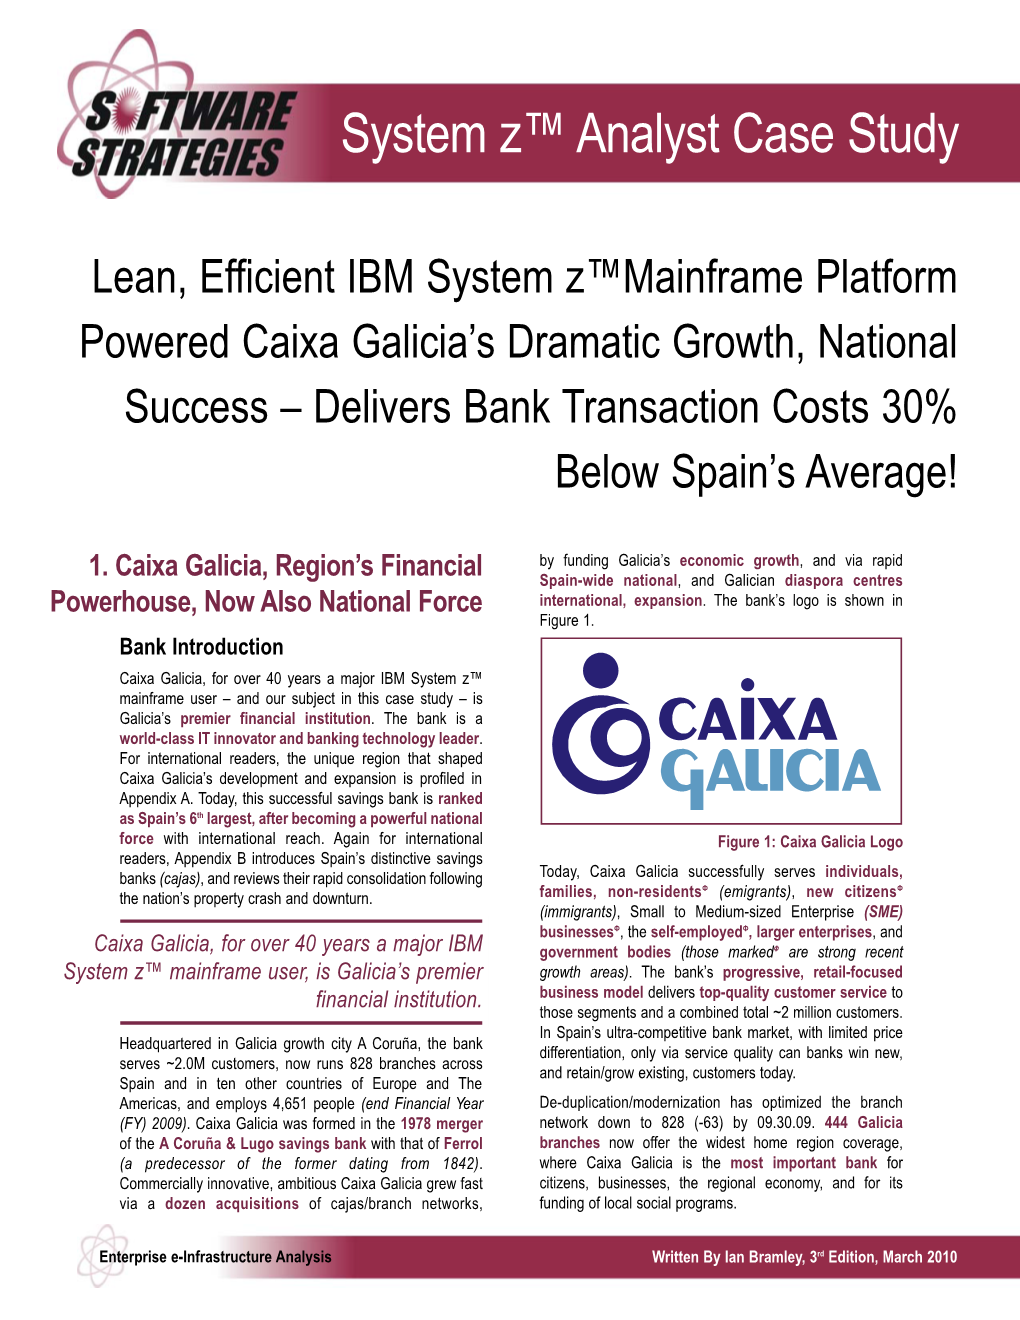 System Z Caixa Galicia 2010 (CCS-3Rd Ed Mar10):Mysis